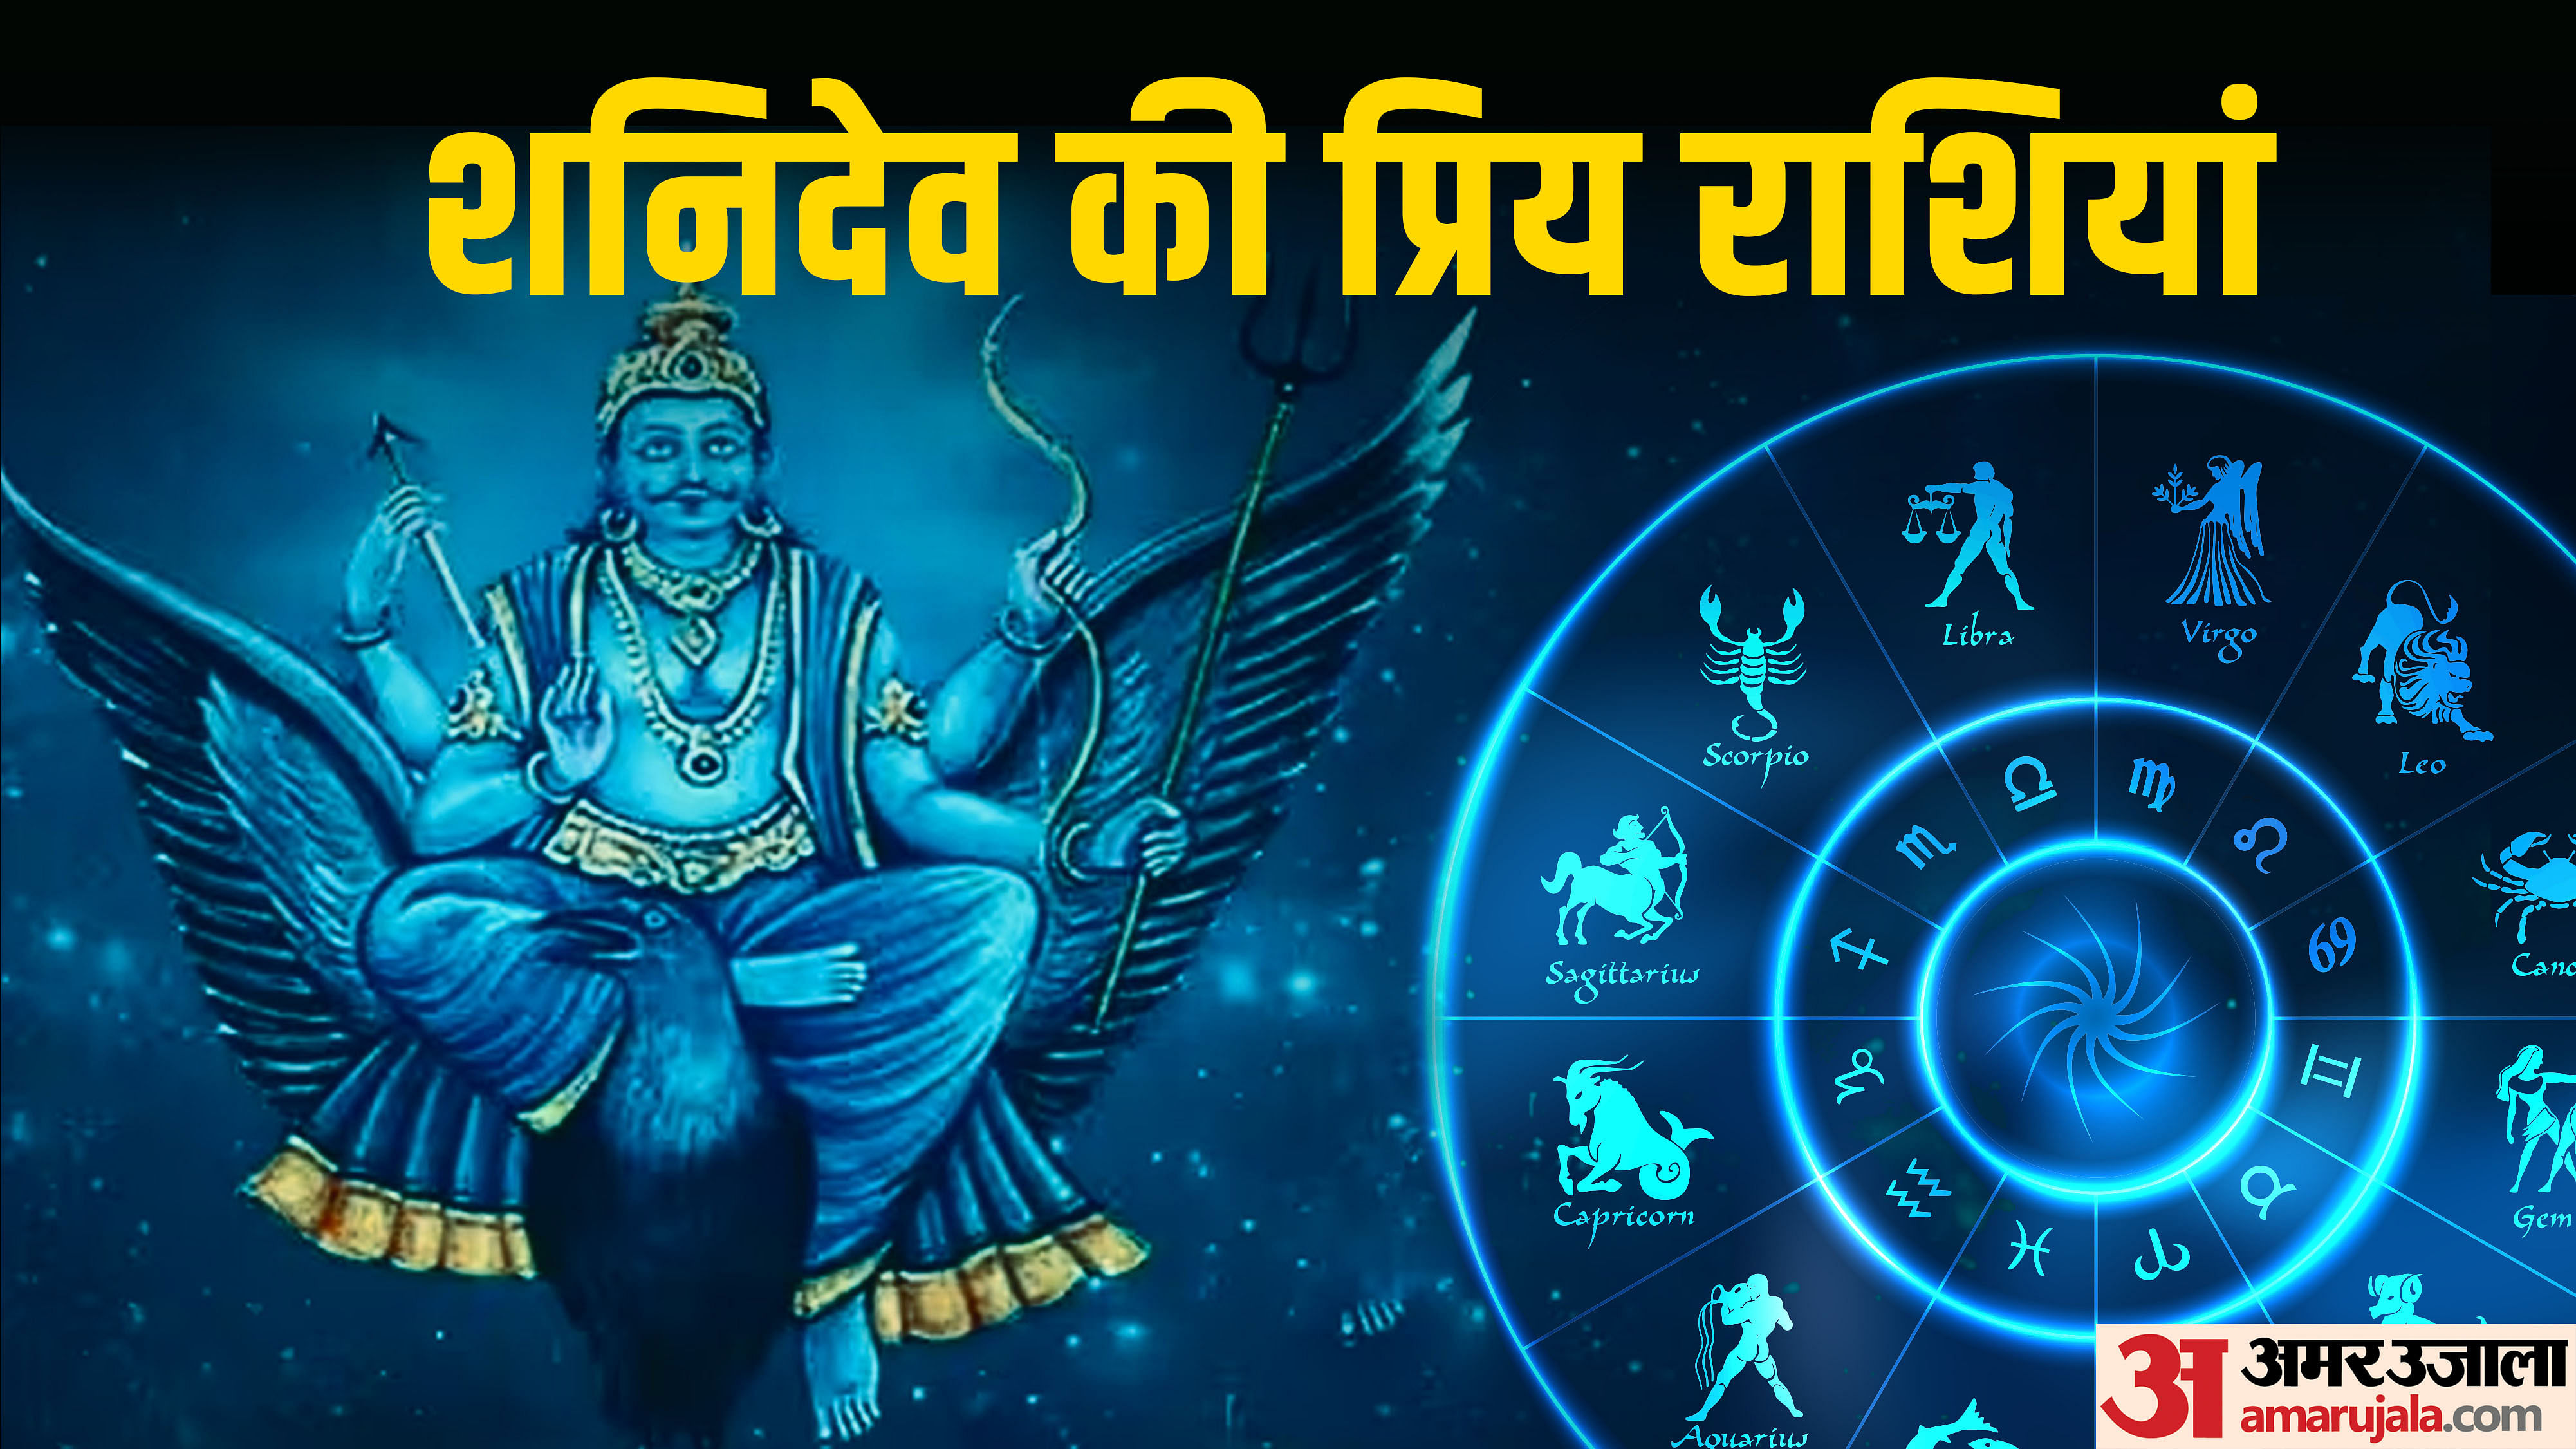 Saturn Transit 2023,Shani Dev Blessings: ಶನಿ ದೇವ ಈ ರಾಶಿಯವರಿಗೆ ಕಷ್ಟವೇ  ಕೊಡುವುದಿಲ್ಲ, ಸದಾ ಕಾಯುತ್ತಾನೆ..! - according to astrology shani dev special  grace will be on these zodiac sign - Vijay Karnataka